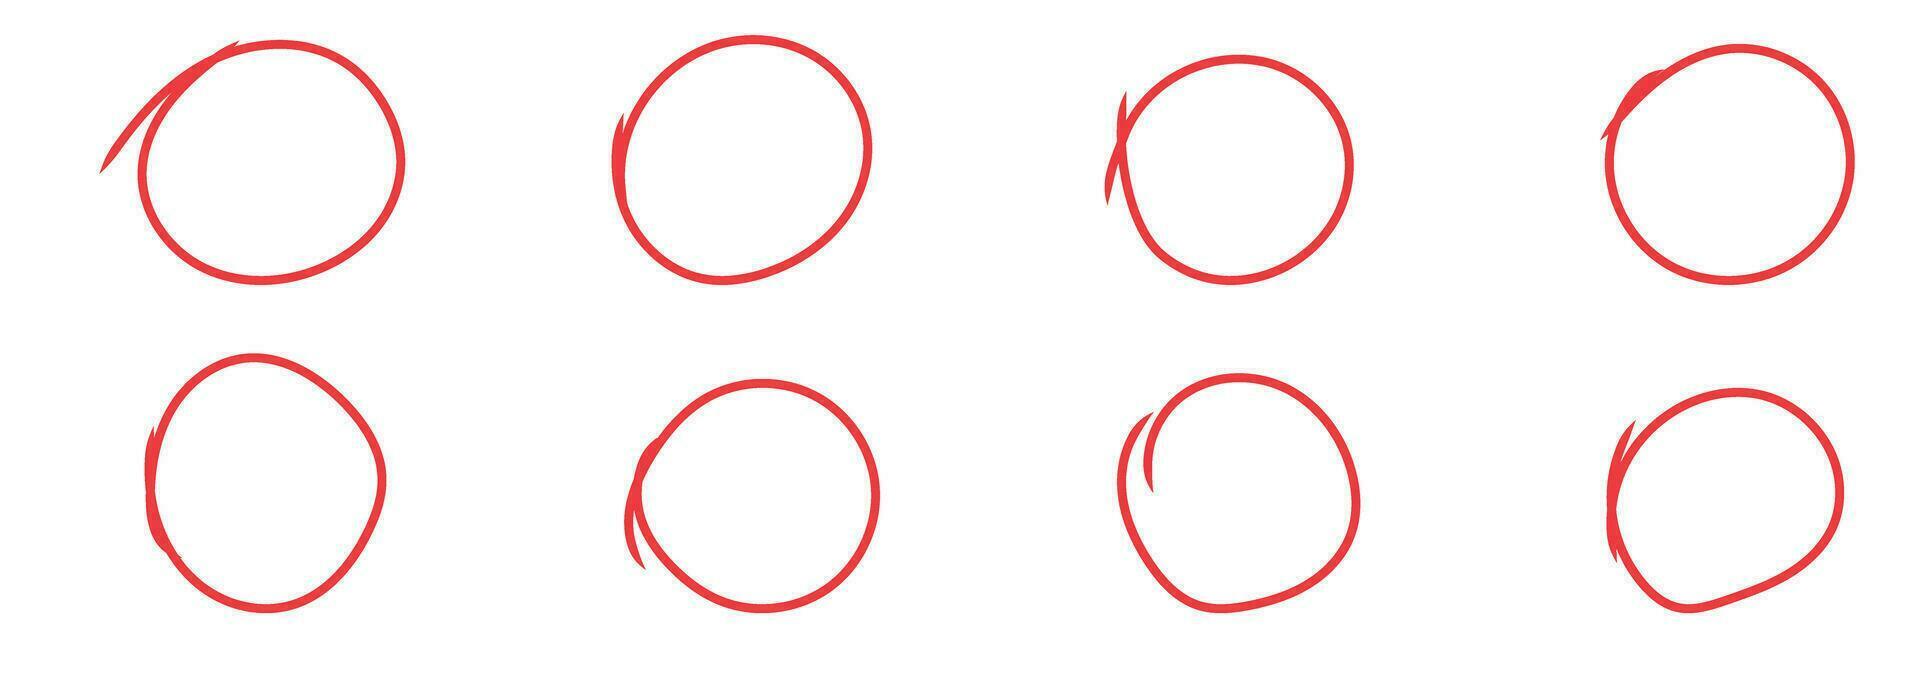 rood cirkel hand- tekening schetsen tekening grunge voor Mark vector